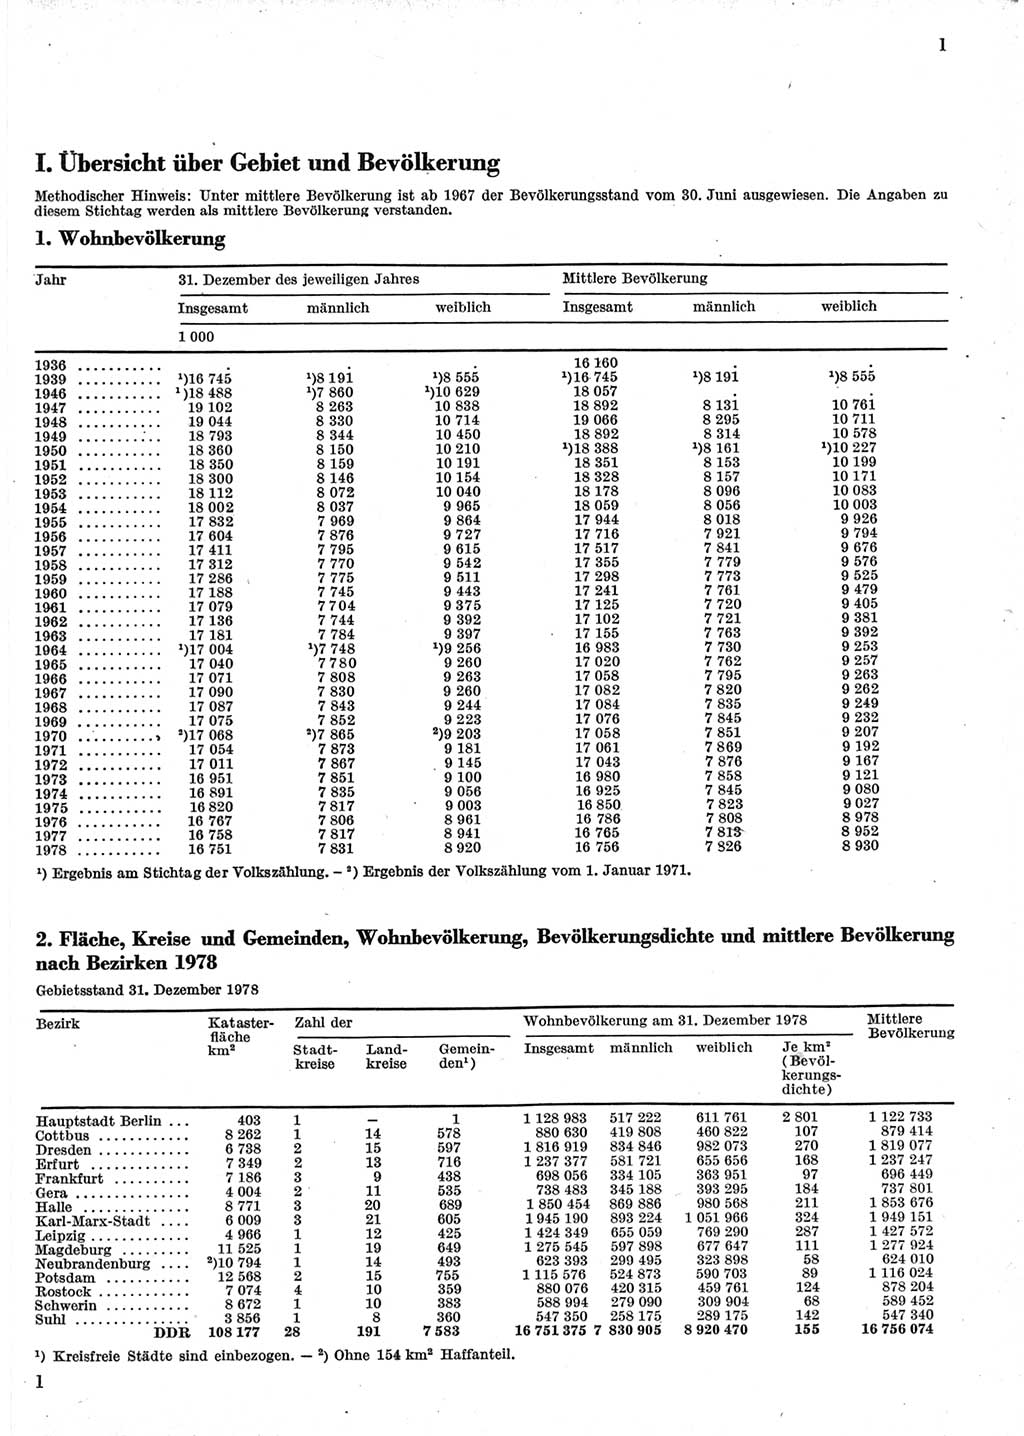 Statistisches Jahrbuch der Deutschen Demokratischen Republik (DDR) 1979, Seite 1 (Stat. Jb. DDR 1979, S. 1)